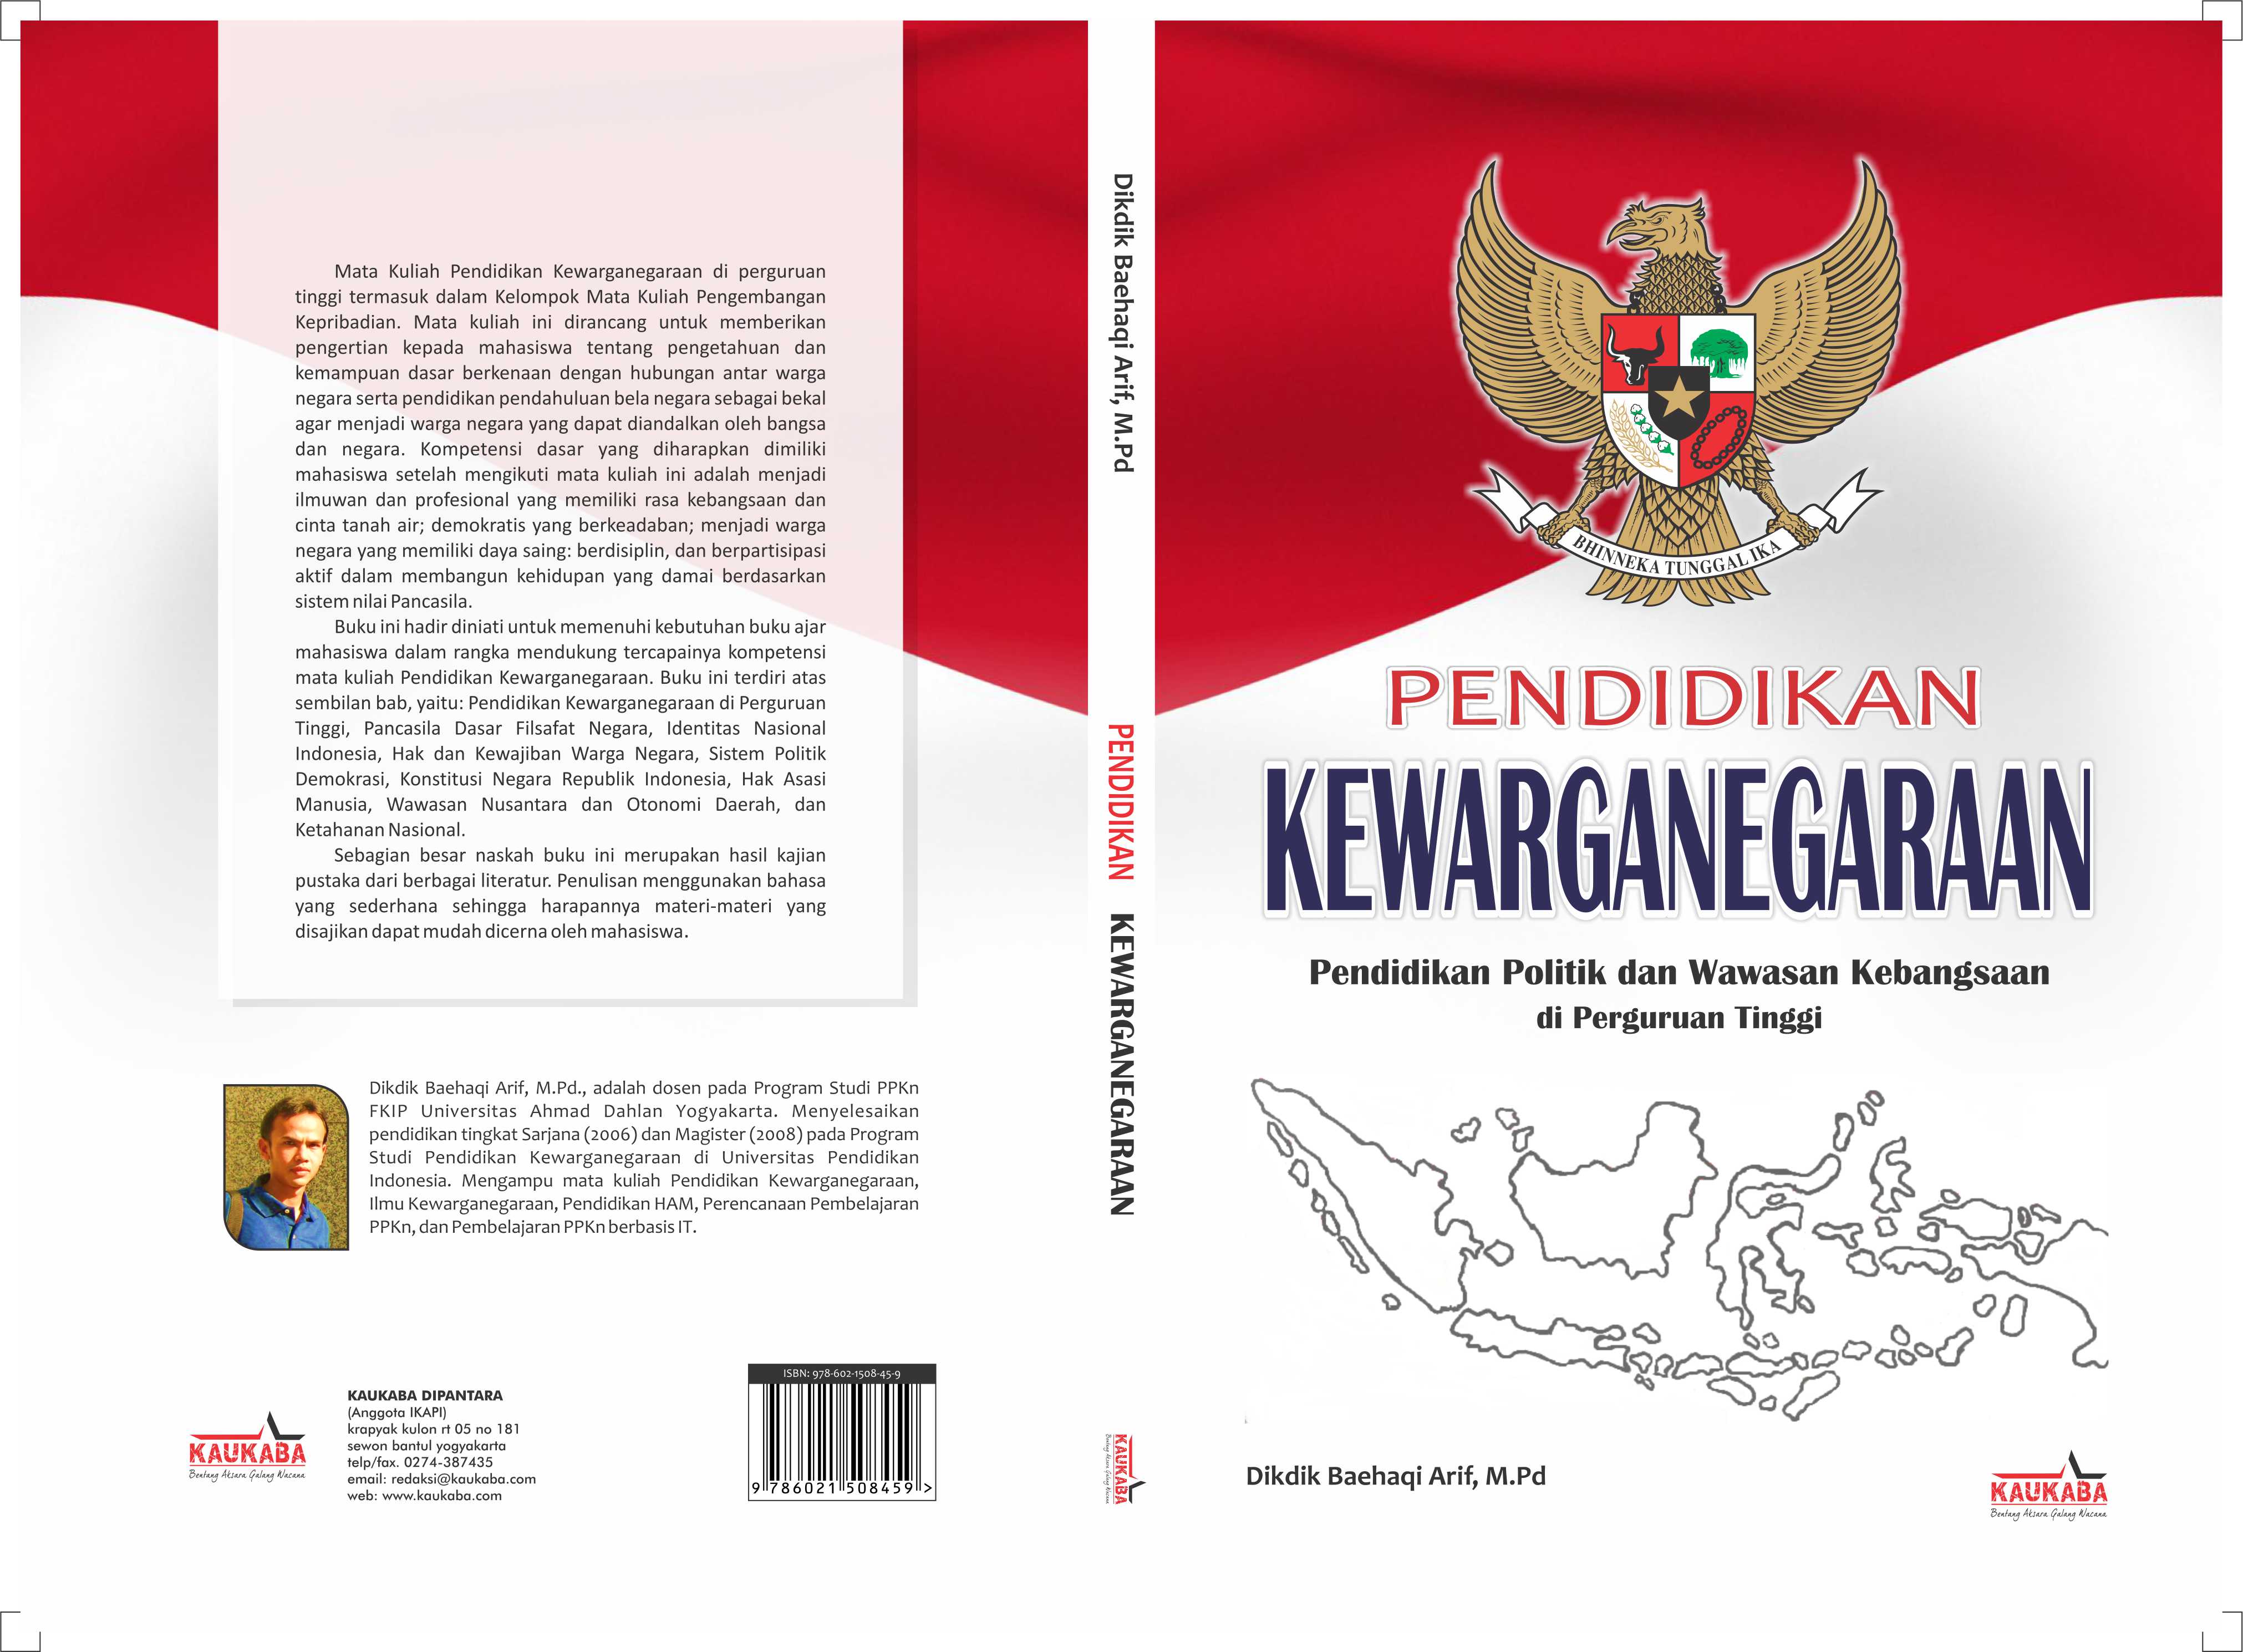 M Pd Judul Buku Pendidikan Kewarganegaraan Pendidikan Politik dan Wawasan Kebangsaan Penerbit Kaukaba Dipantara Yogyakarta